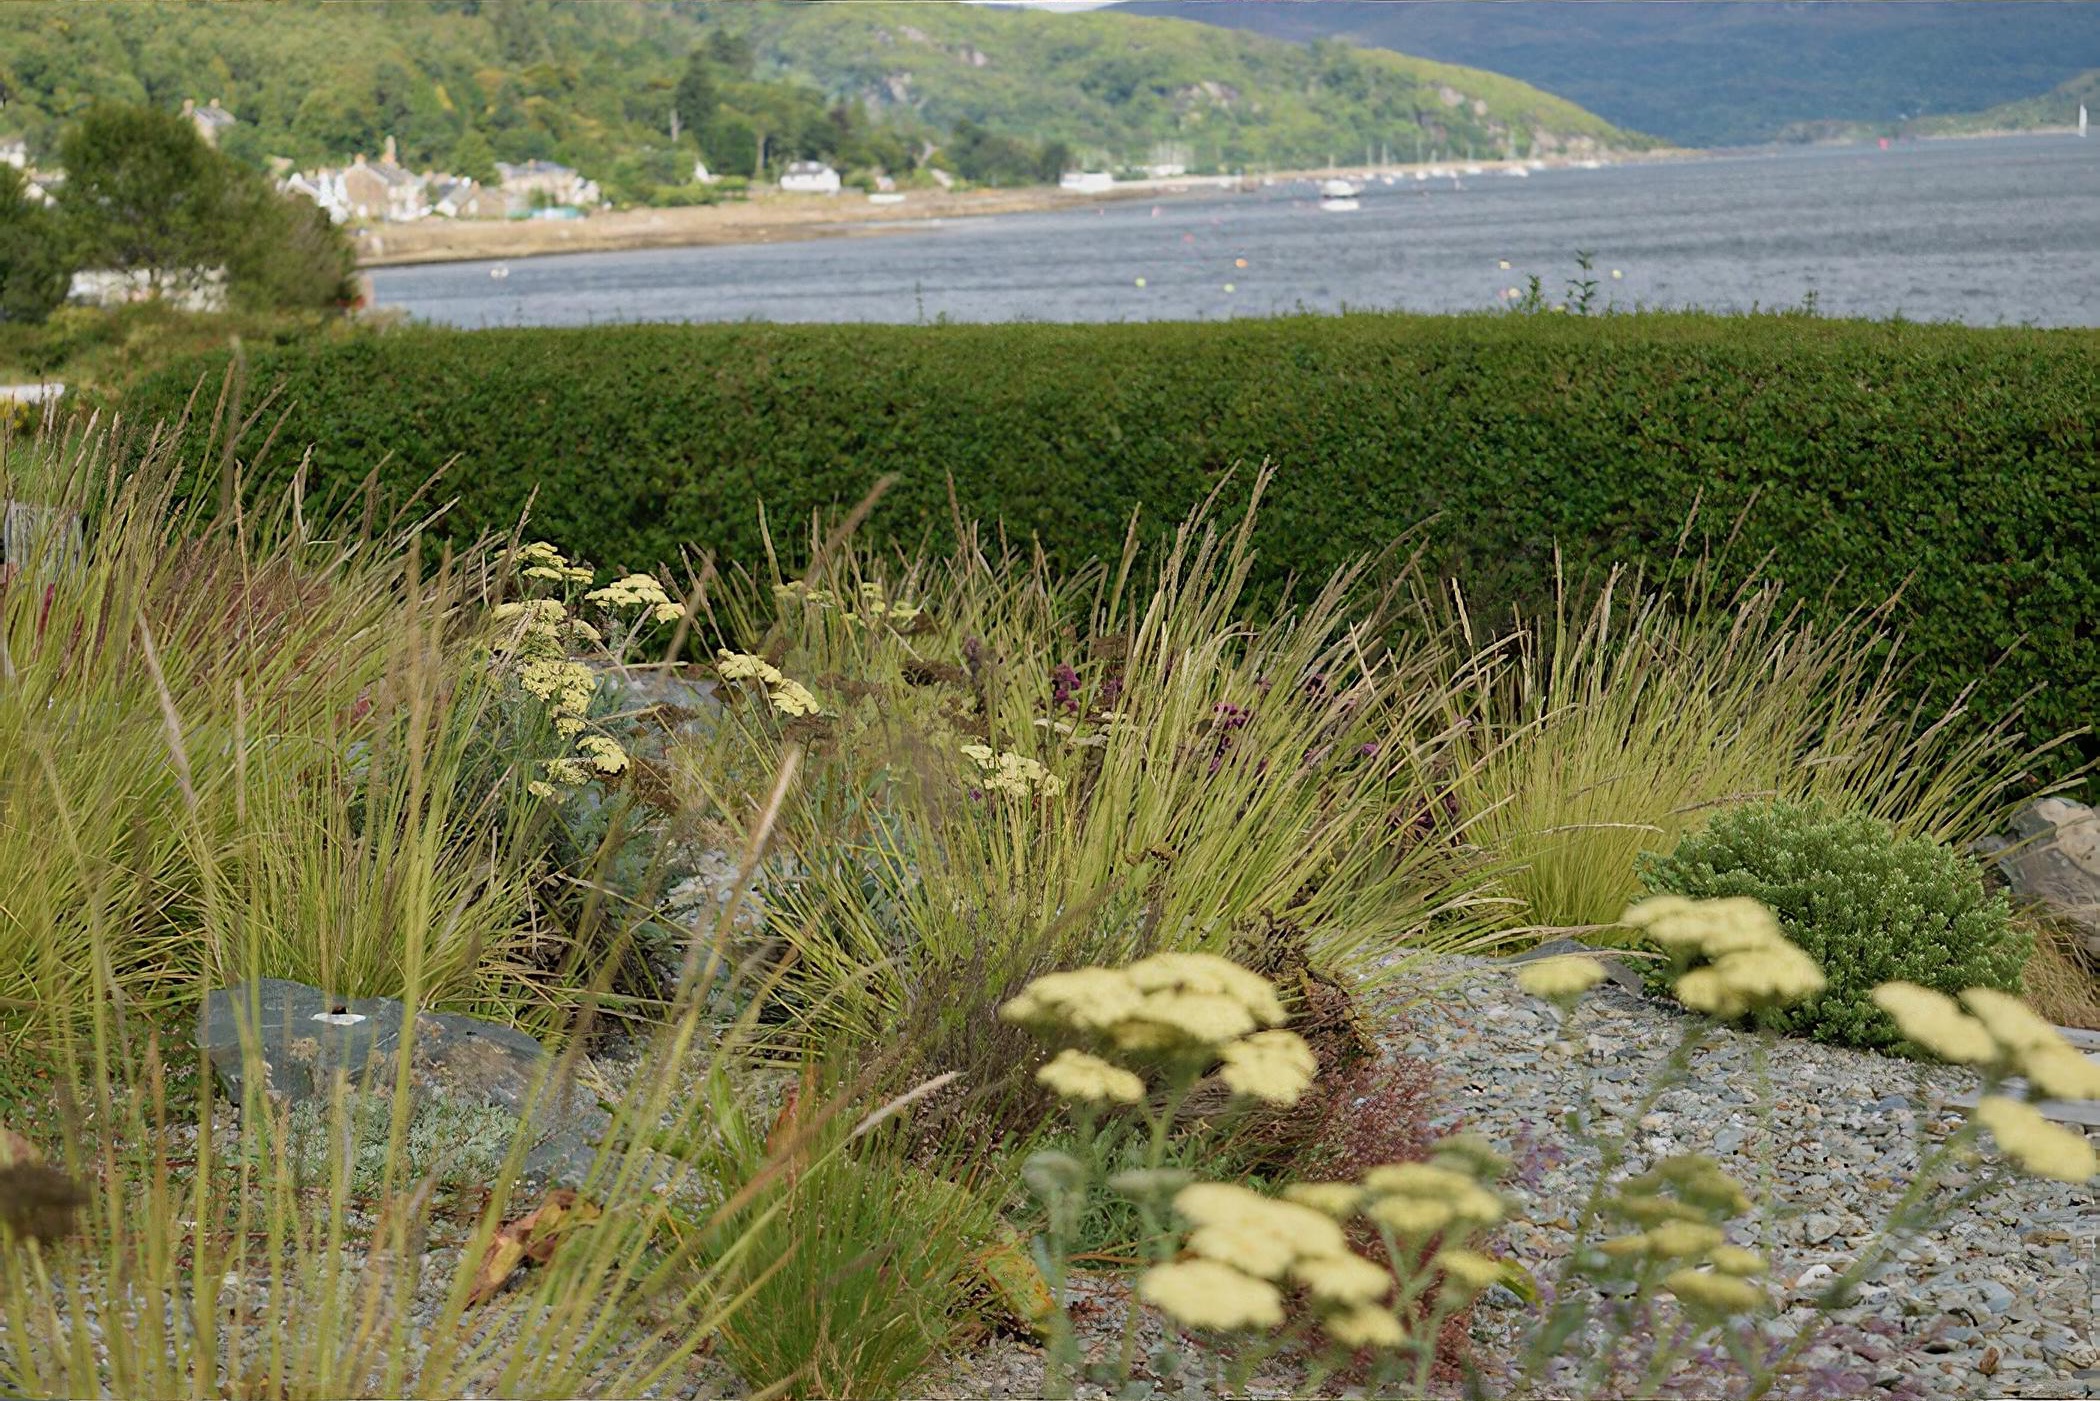 Exposed Coastal Garden by Scotland based garden designer Rachel Bailey